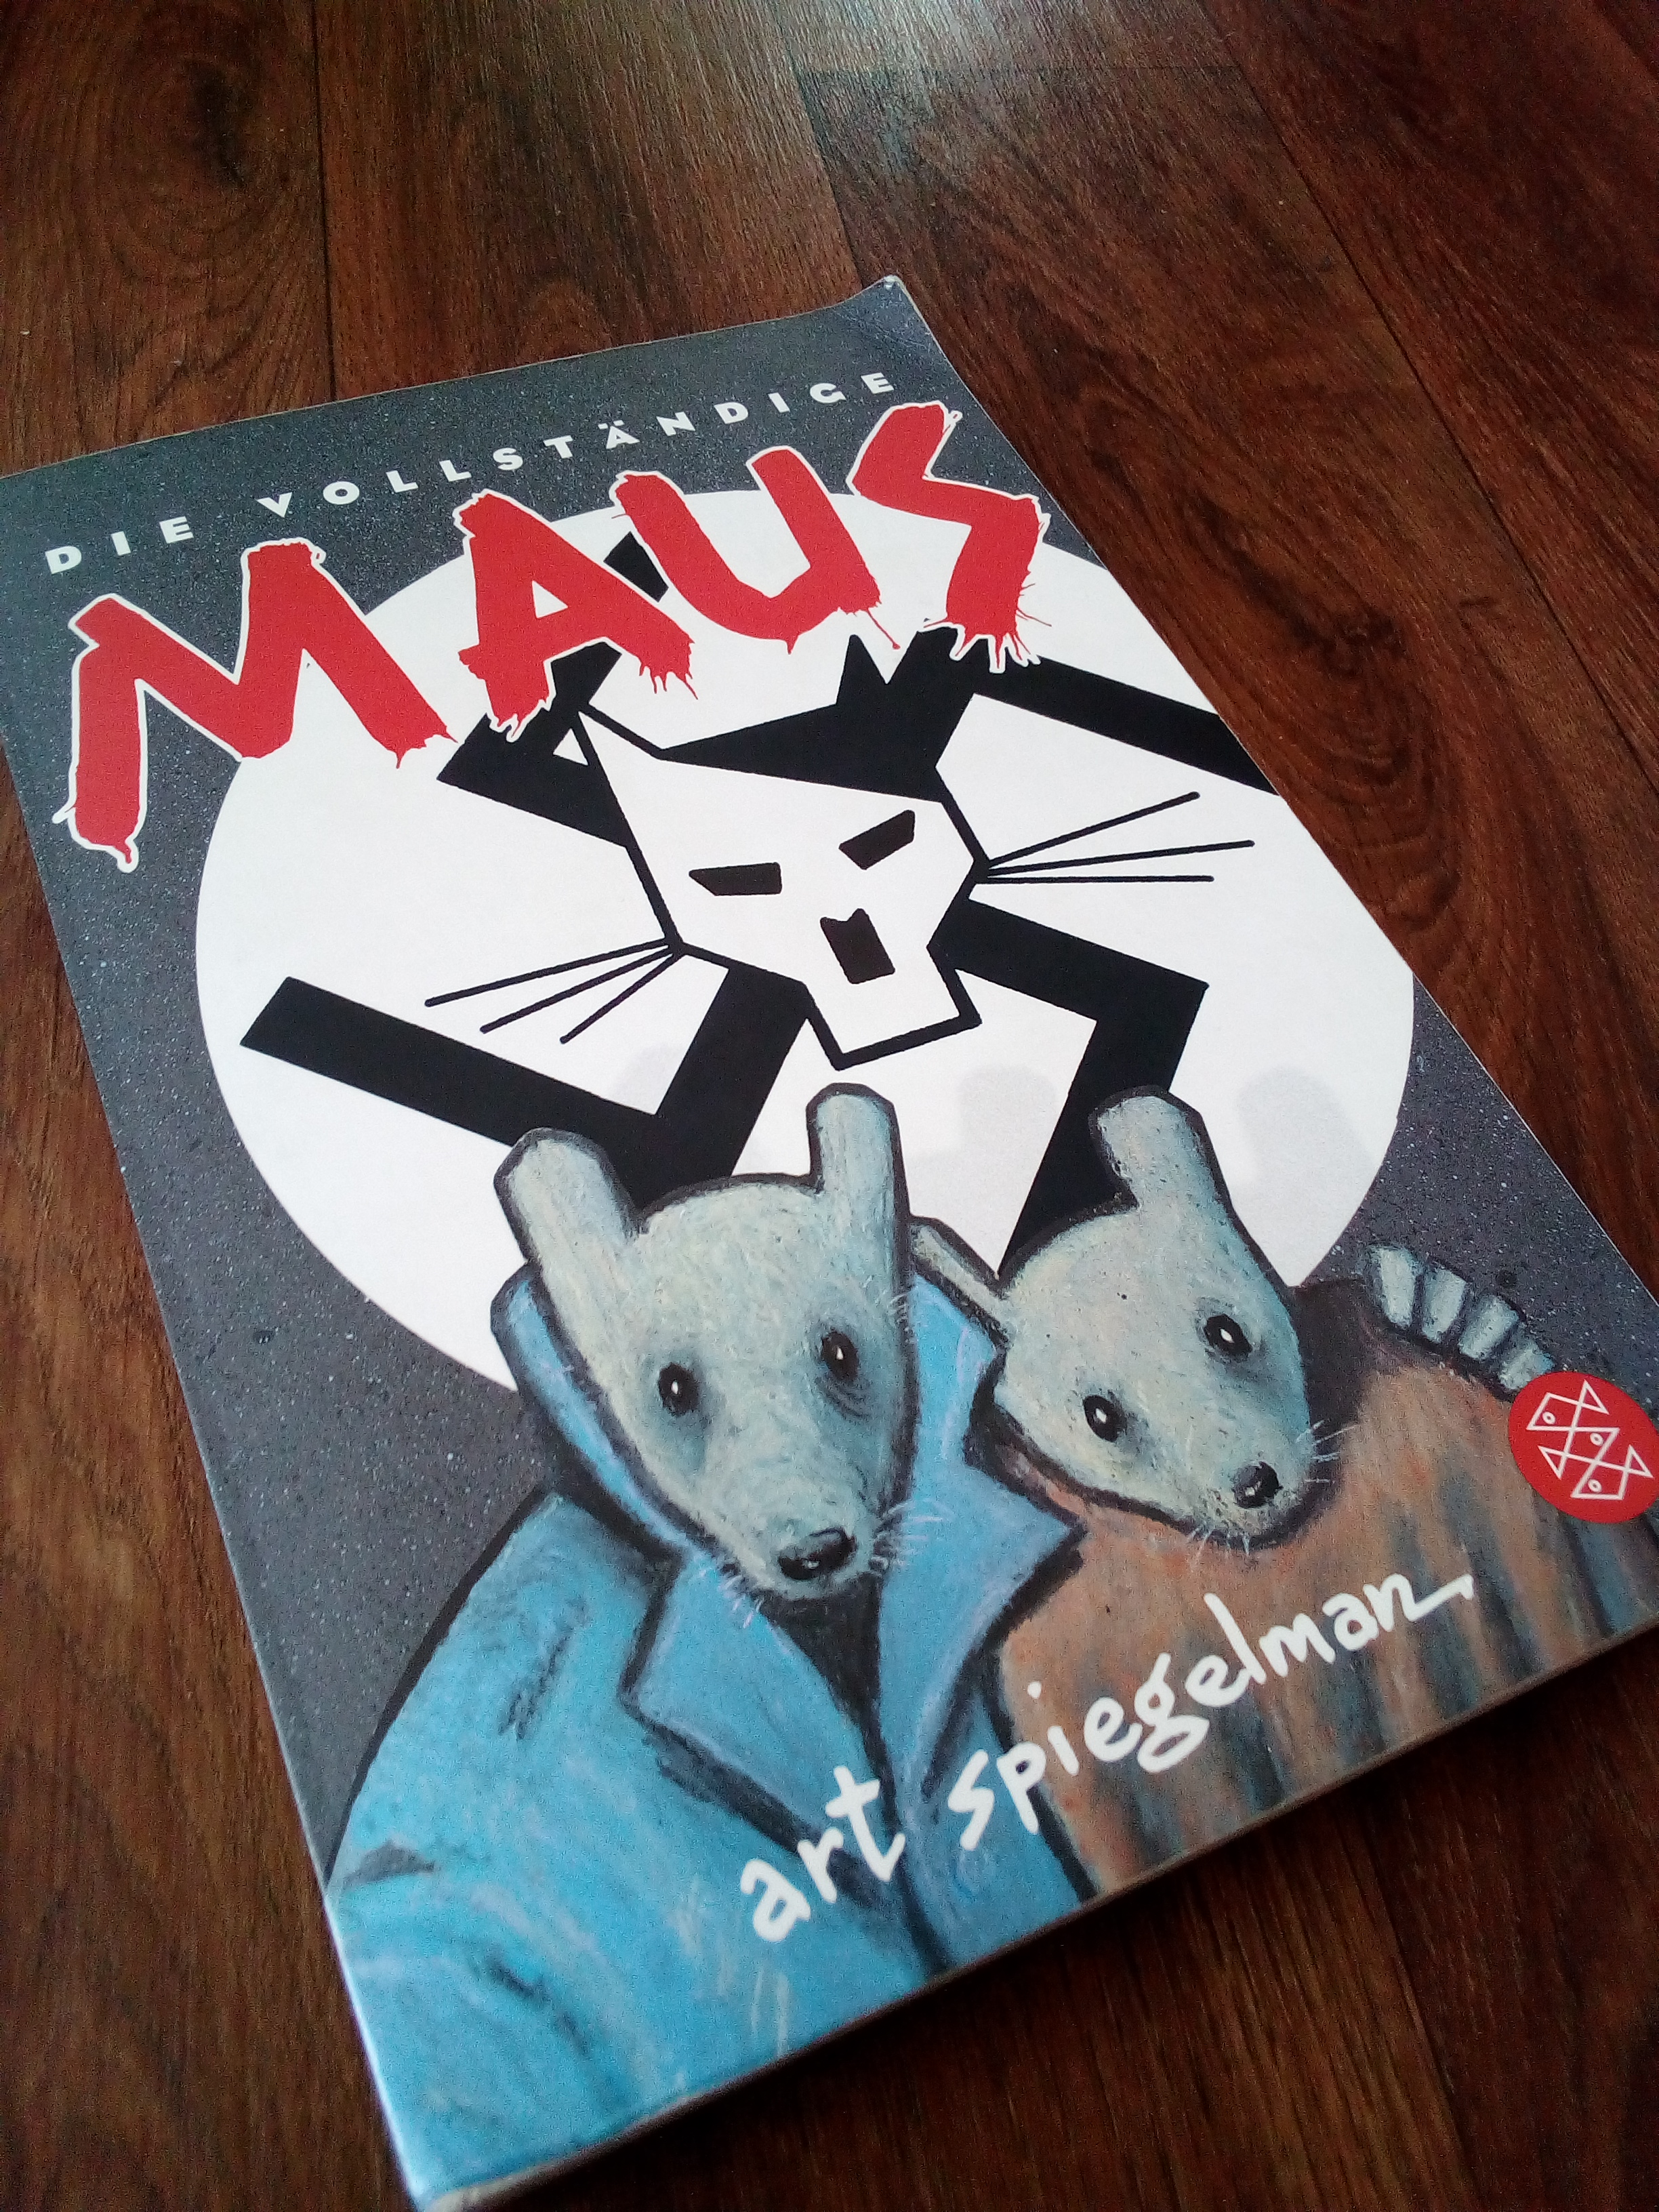 [Graphic Novel] "Maus" von Art Spiegelman